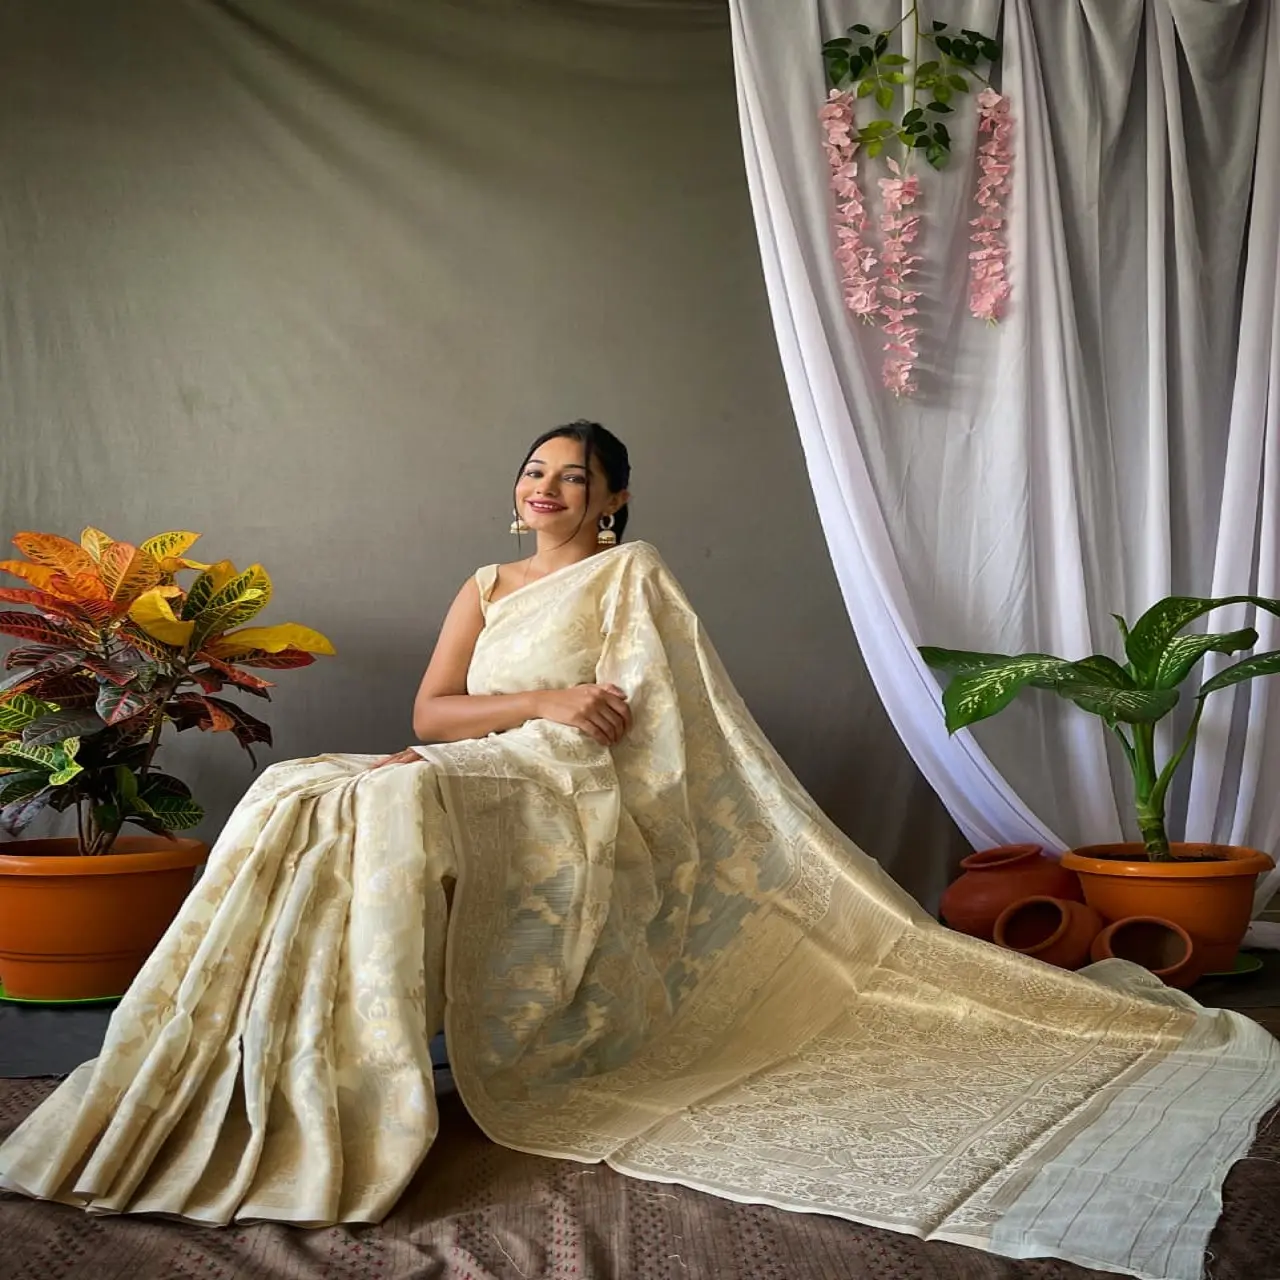 ส่าหรีผ้าไหมส่าหรีสำหรับผู้หญิงชุดส่าหรีดีไซน์ใหม่ล่าสุดส่าหรีอินเดียสำหรับงานปาร์ตี้งานแต่งงาน